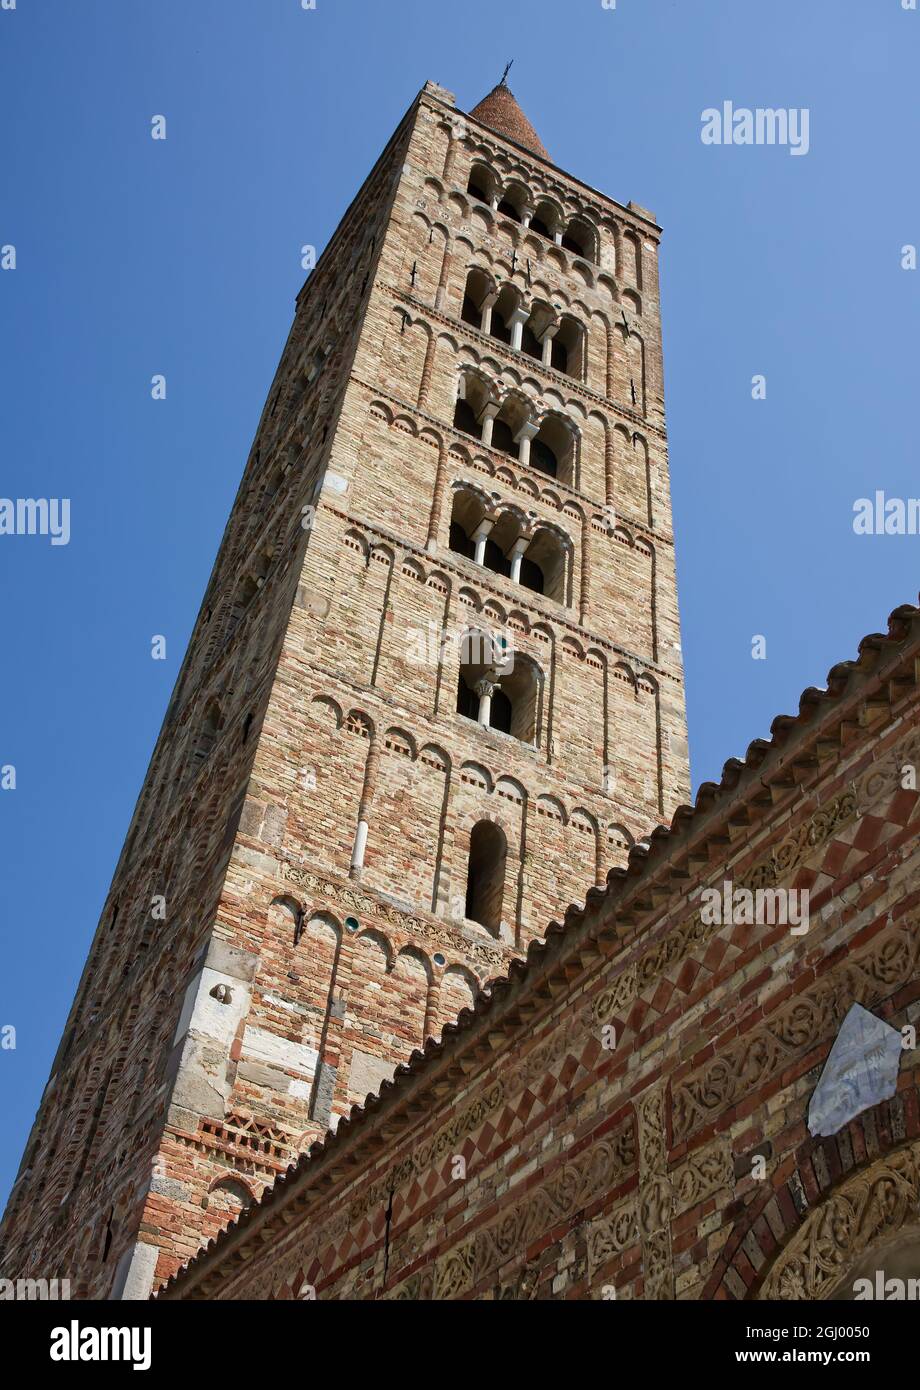 Clocher roman de l'abbaye de Pomposa (Abbazia di Pomposa) situé à Codigoro, Ferrara. L'abbaye de Pomposa est l'une des abbé médiévales les plus importantes Banque D'Images